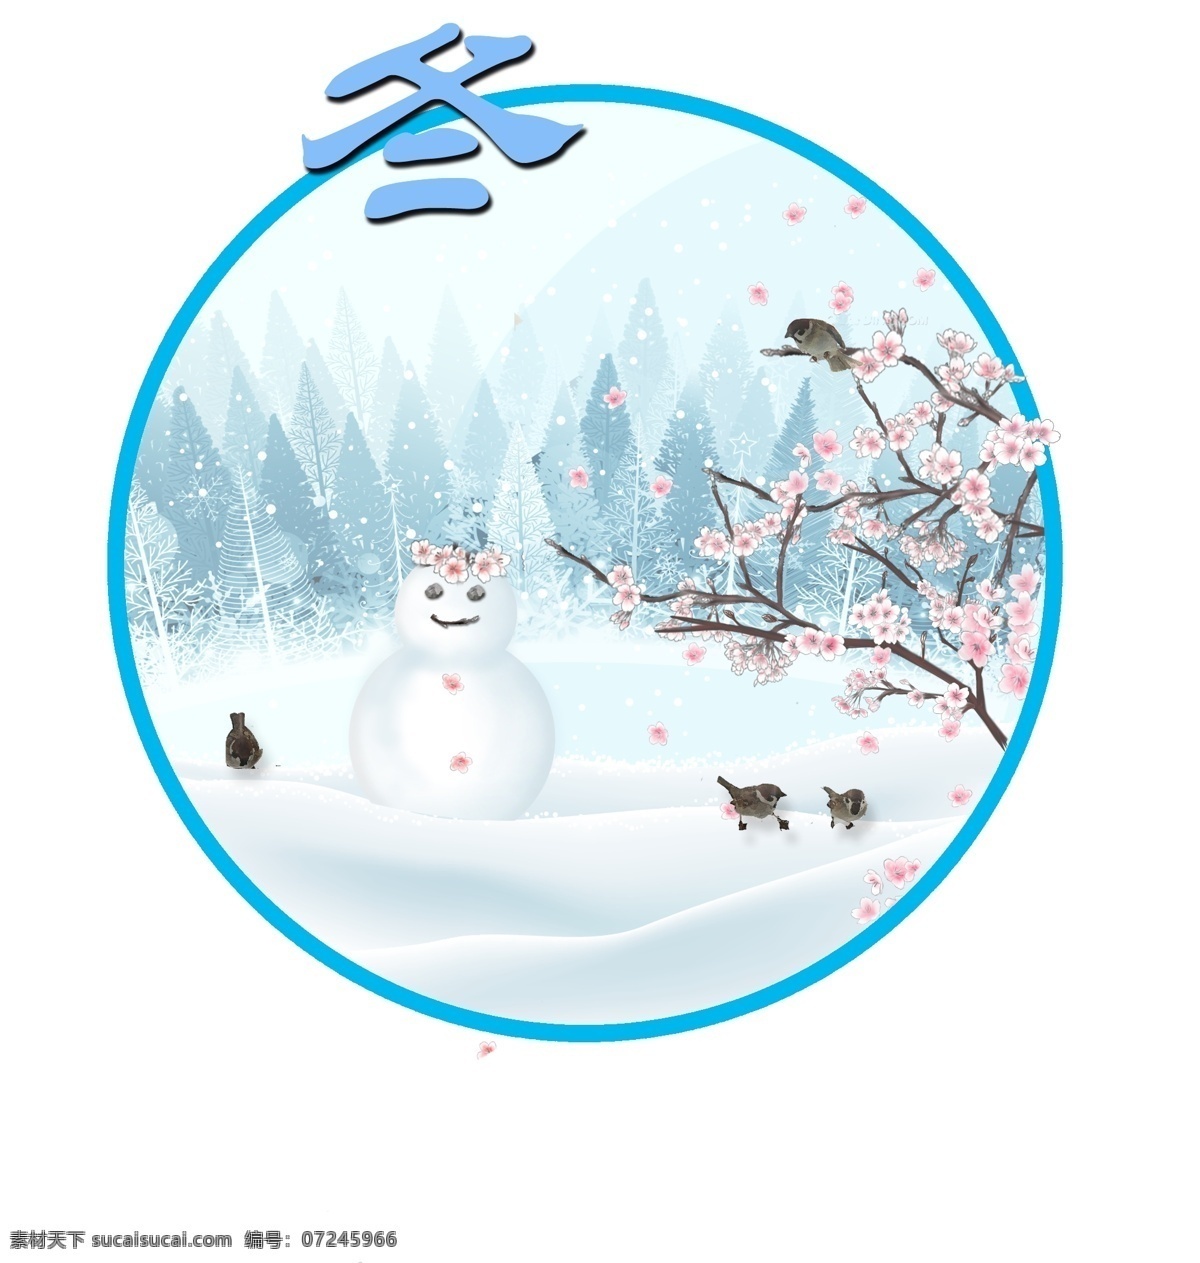 四季 手绘 背景 冬天 元素 雪人 梅花花卉 树林 麻雀 动物 冬季景色